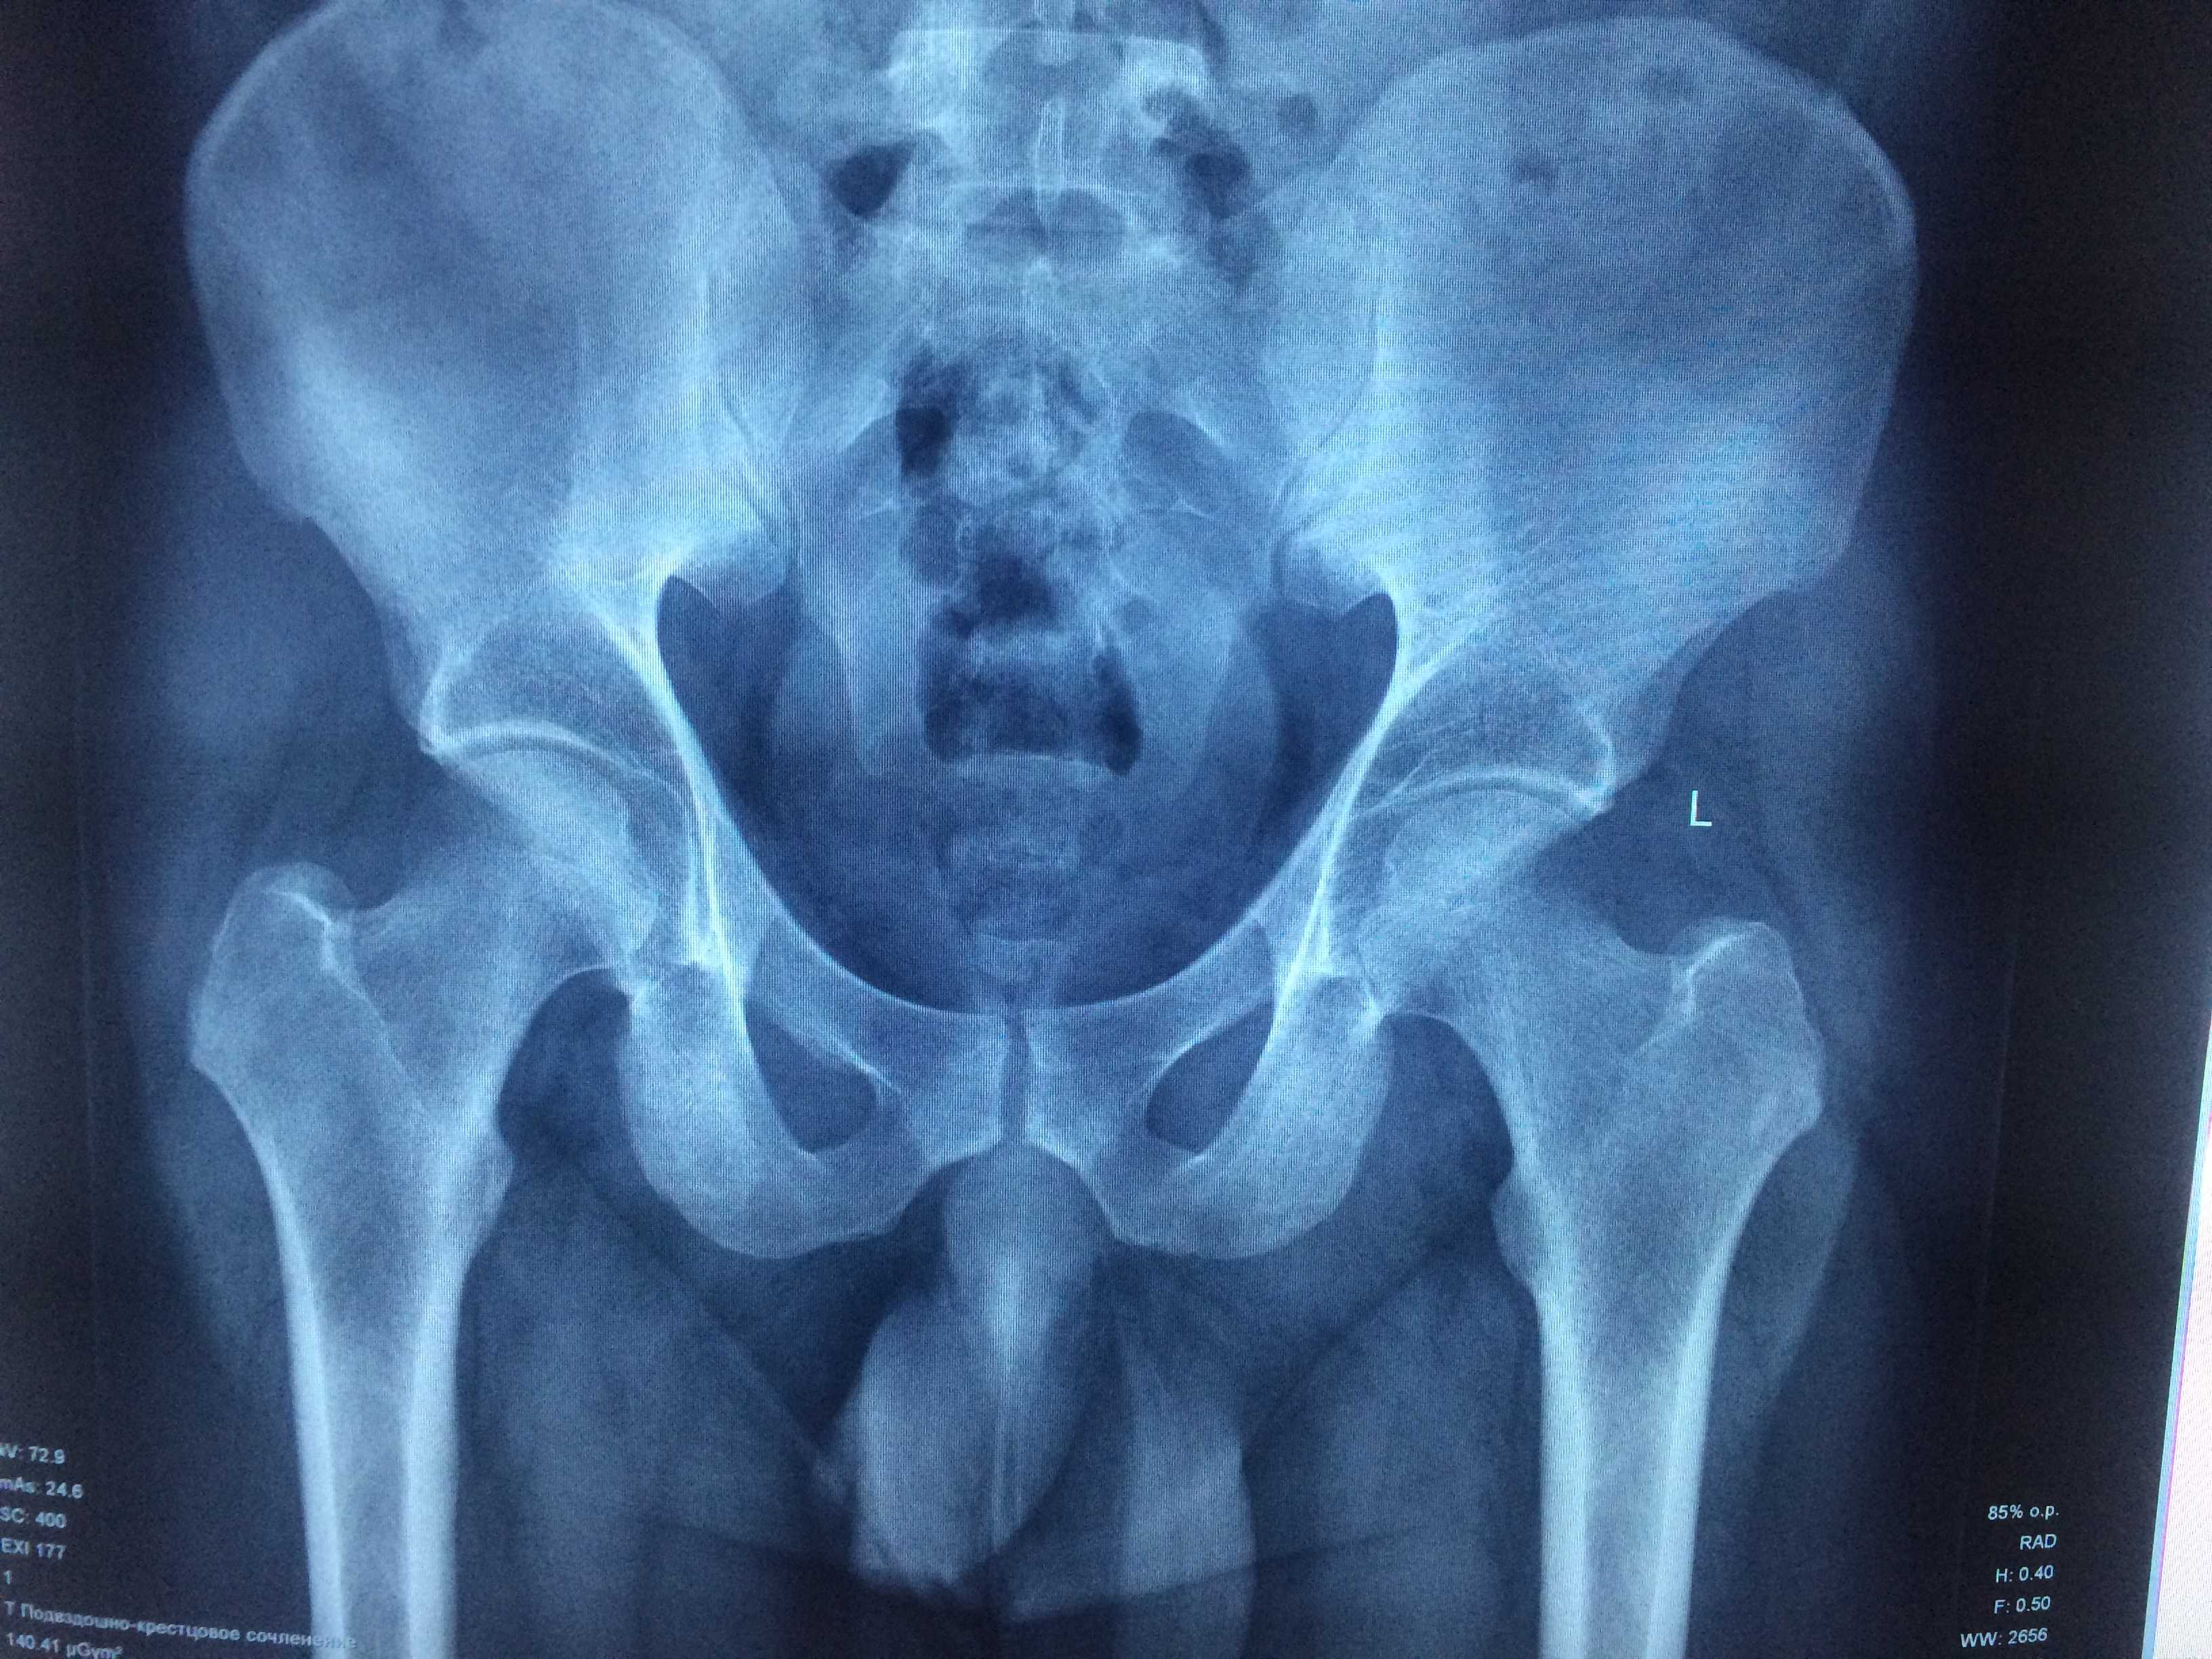 Рентген тазобедренного сустава: подготовка и проведение в отличии от мрт